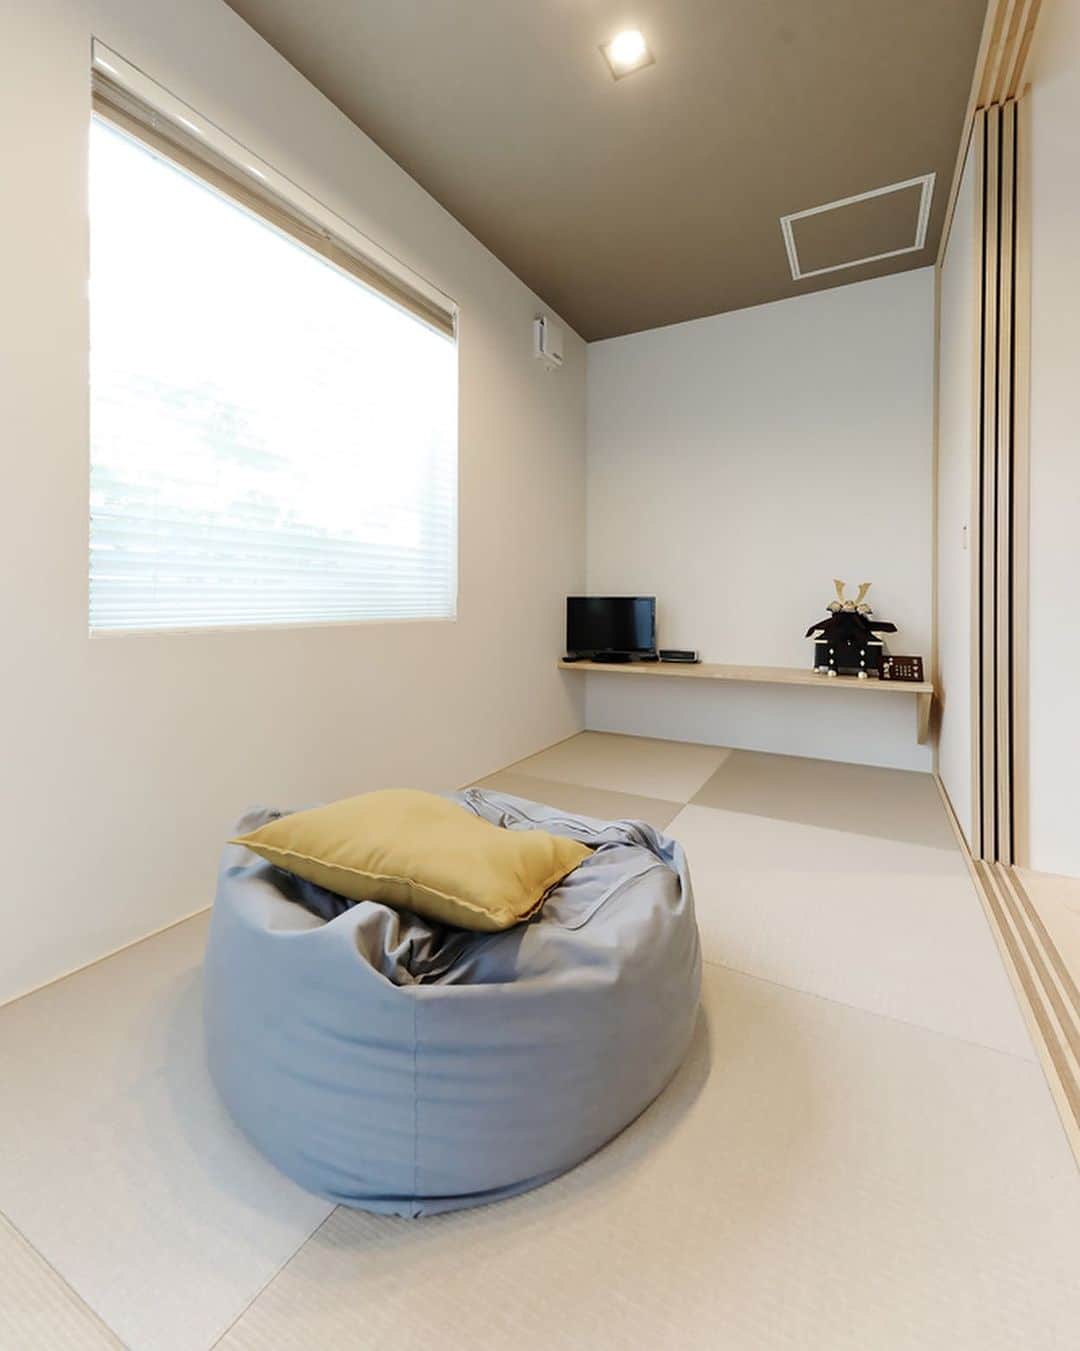 デザオ建設のインスタグラム：「畳コーナー 小上がりの畳コーナーです！ あると何かと使える畳コーナー こちらは4畳分の広さがあります！ ⁡ 床下は収納になっています✨ ゴロンと横になりたい時やお昼寝が ゆっくりできそうです😌 ⁡お客さんが来られた時にお通しする スペースにも使えますね🎵 ⁡ ※モデルハウス展示場予約は、 　@dezao_kensetsuのURLに 　とんでいただき、「イベント予約」から 　お待ちしております🏠 ⁡ #注文住宅 #マイホーム #インテリア #新築  #リフォーム #リノベーション #家 #住宅 #interior #デザオ建設 #工務店 #一軒家 #日々 #マイホーム記録 #暮らし #リビング #おうち #リビング #畳 #畳コーナー #畳スペース #小上がり #小上がり収納 #床下収納 #畳の部屋 #畳の歩くらしい #畳コーナーのある間取り」